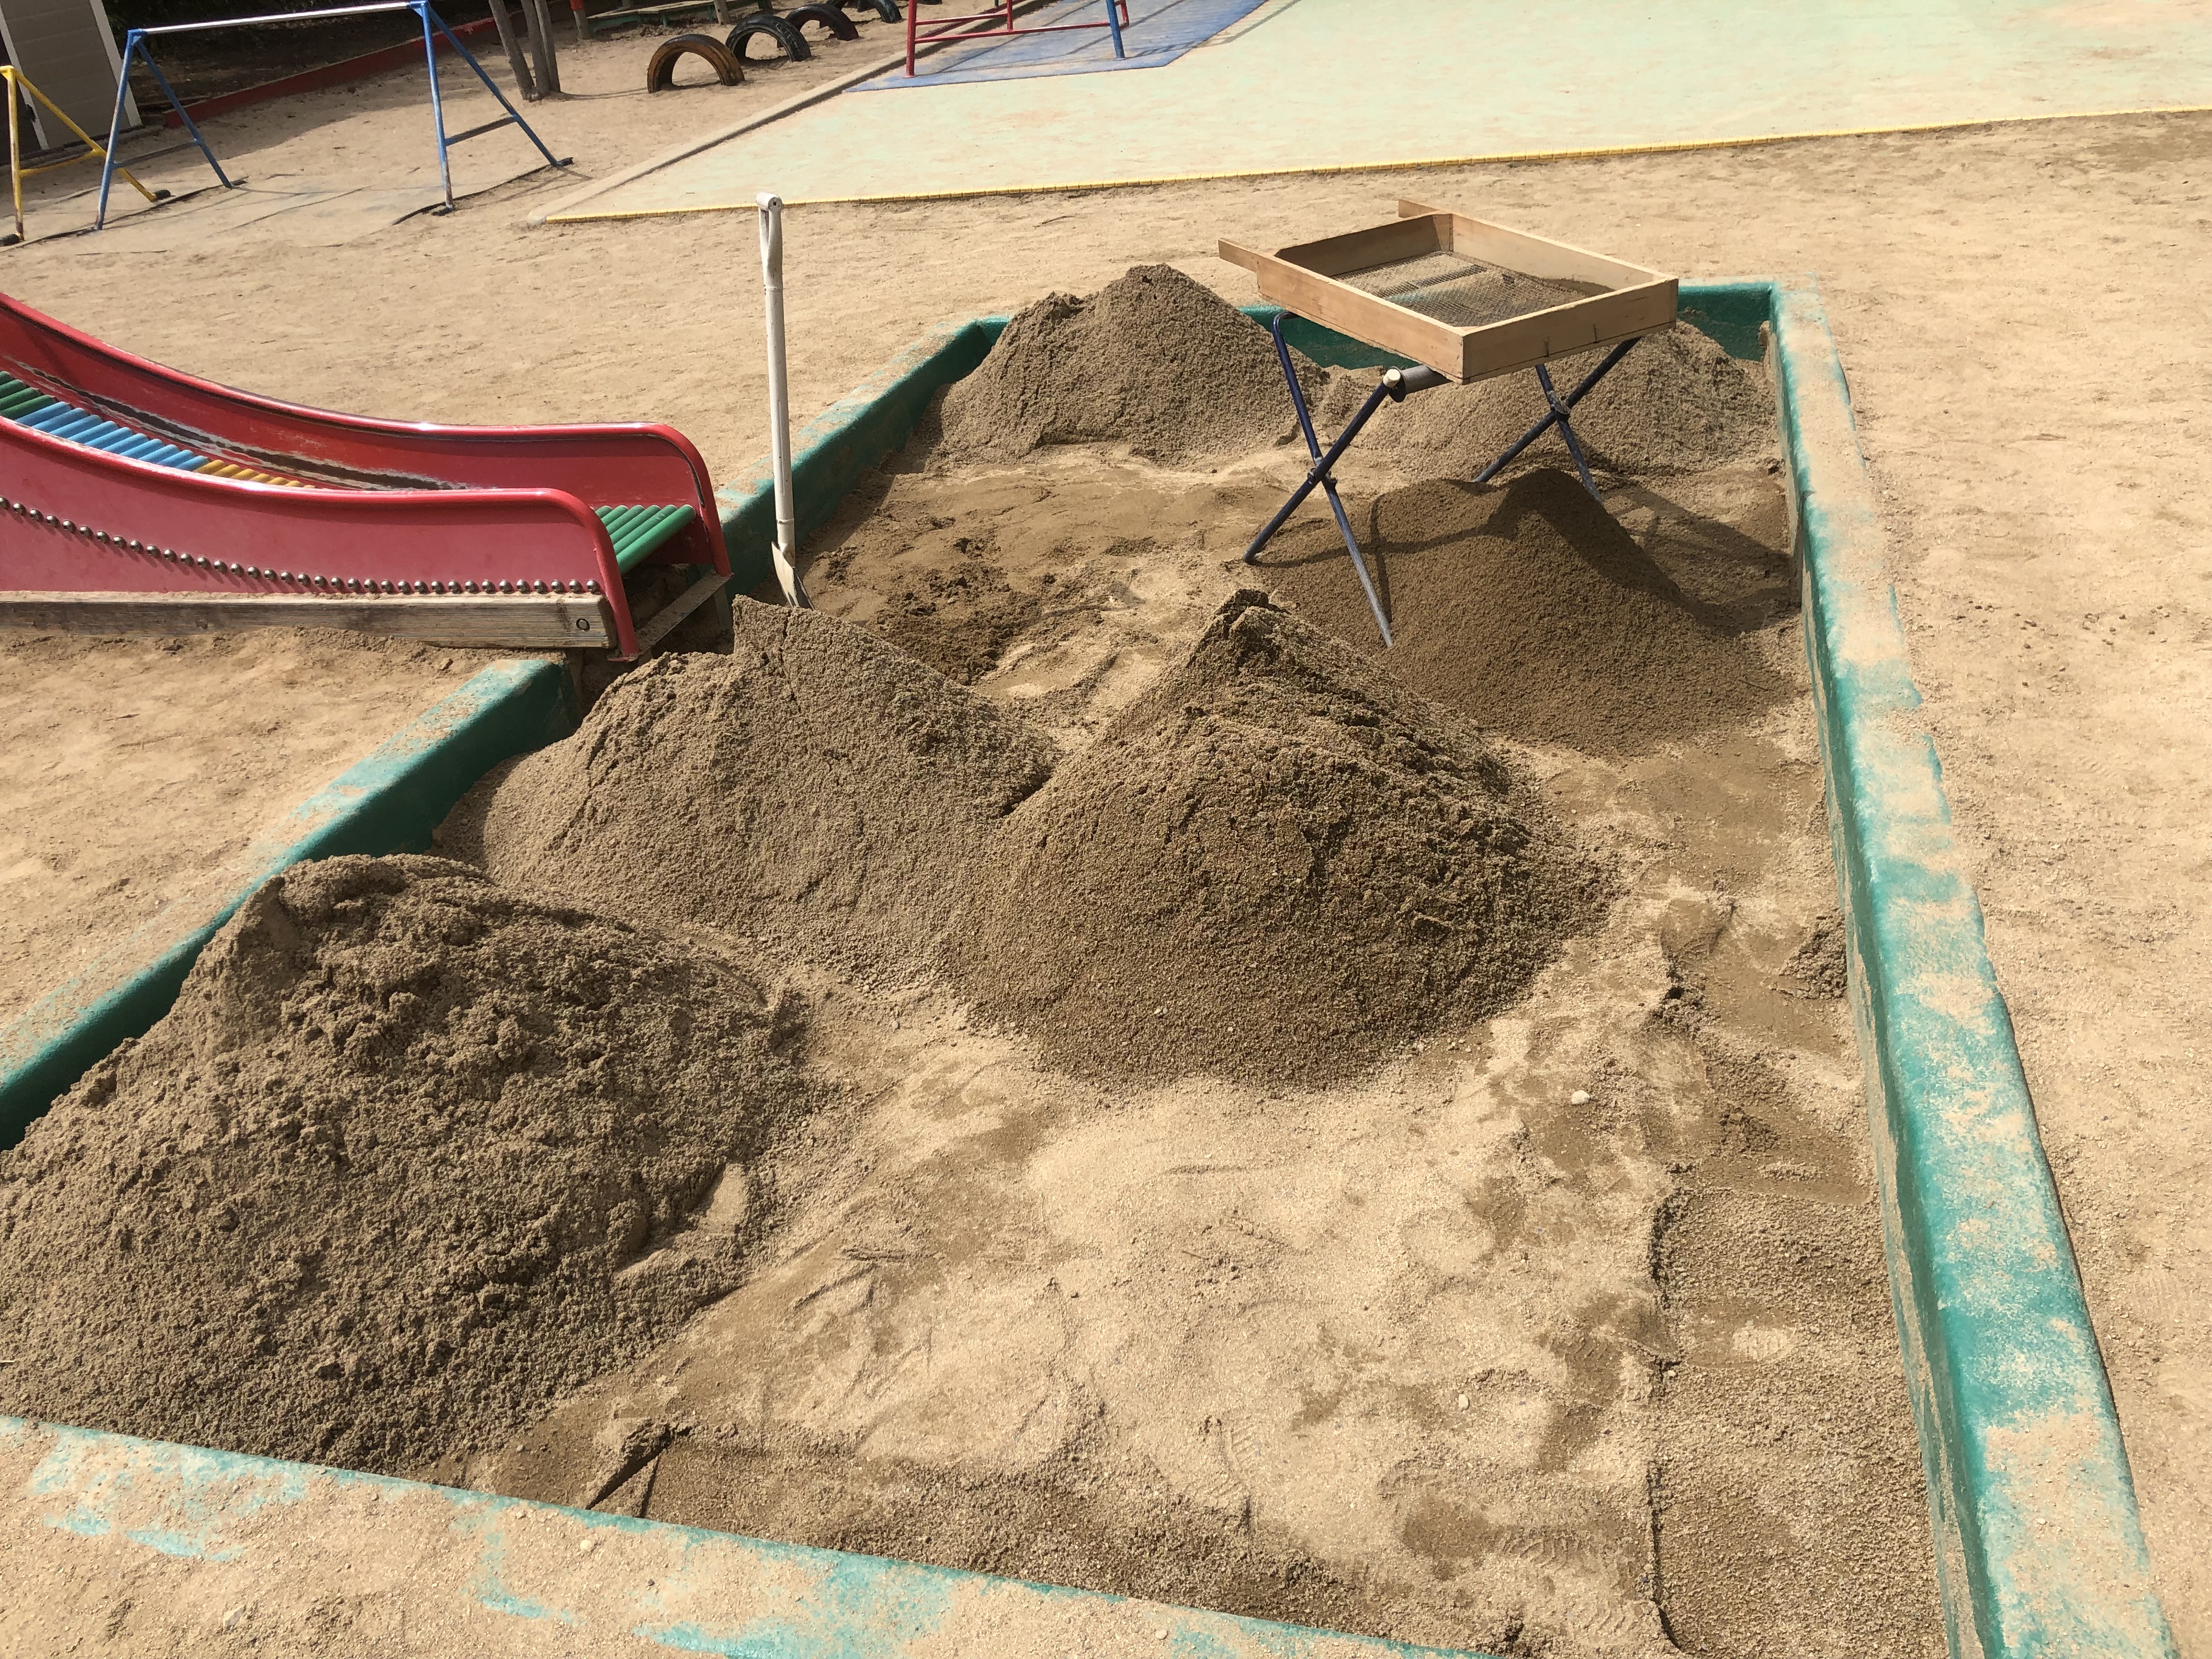 宝塚市の野上あゆみ保育園で砂場クリーニングをおこないました。